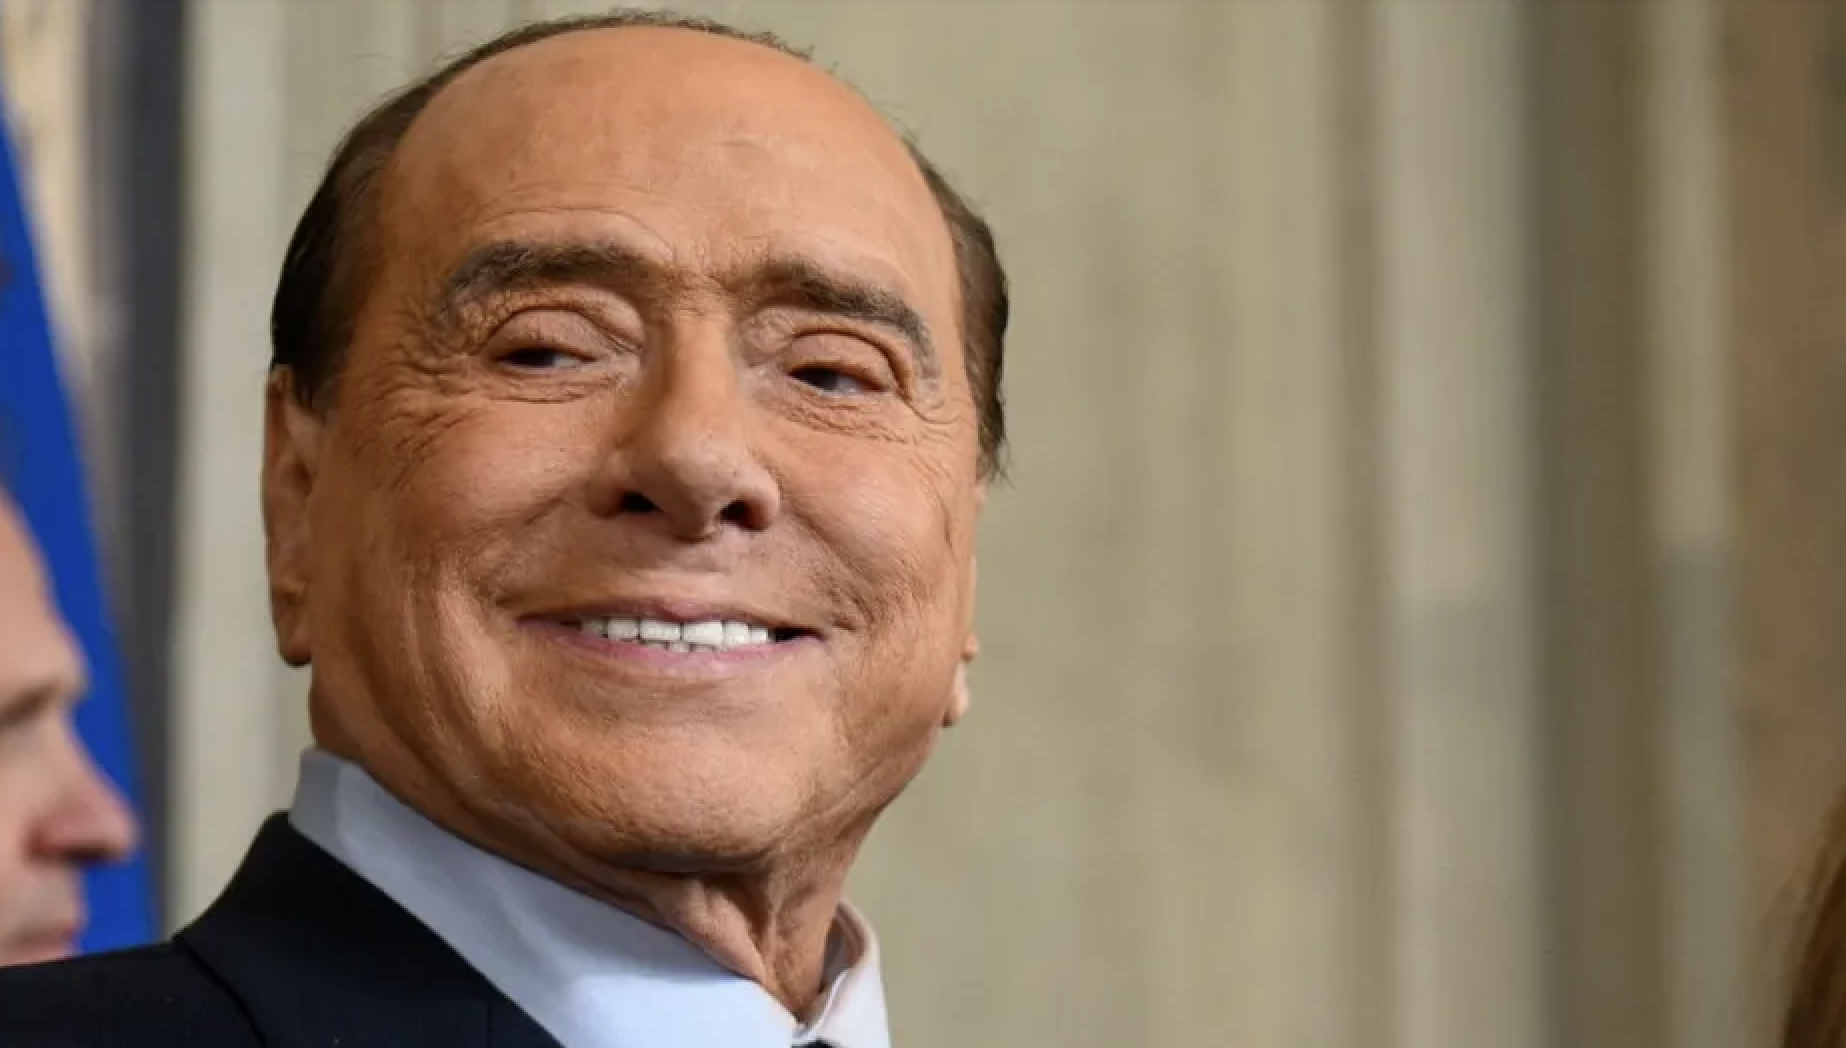     Silvio Berlusconi, l’ancien président du conseil italien est mort à 86 ans 

